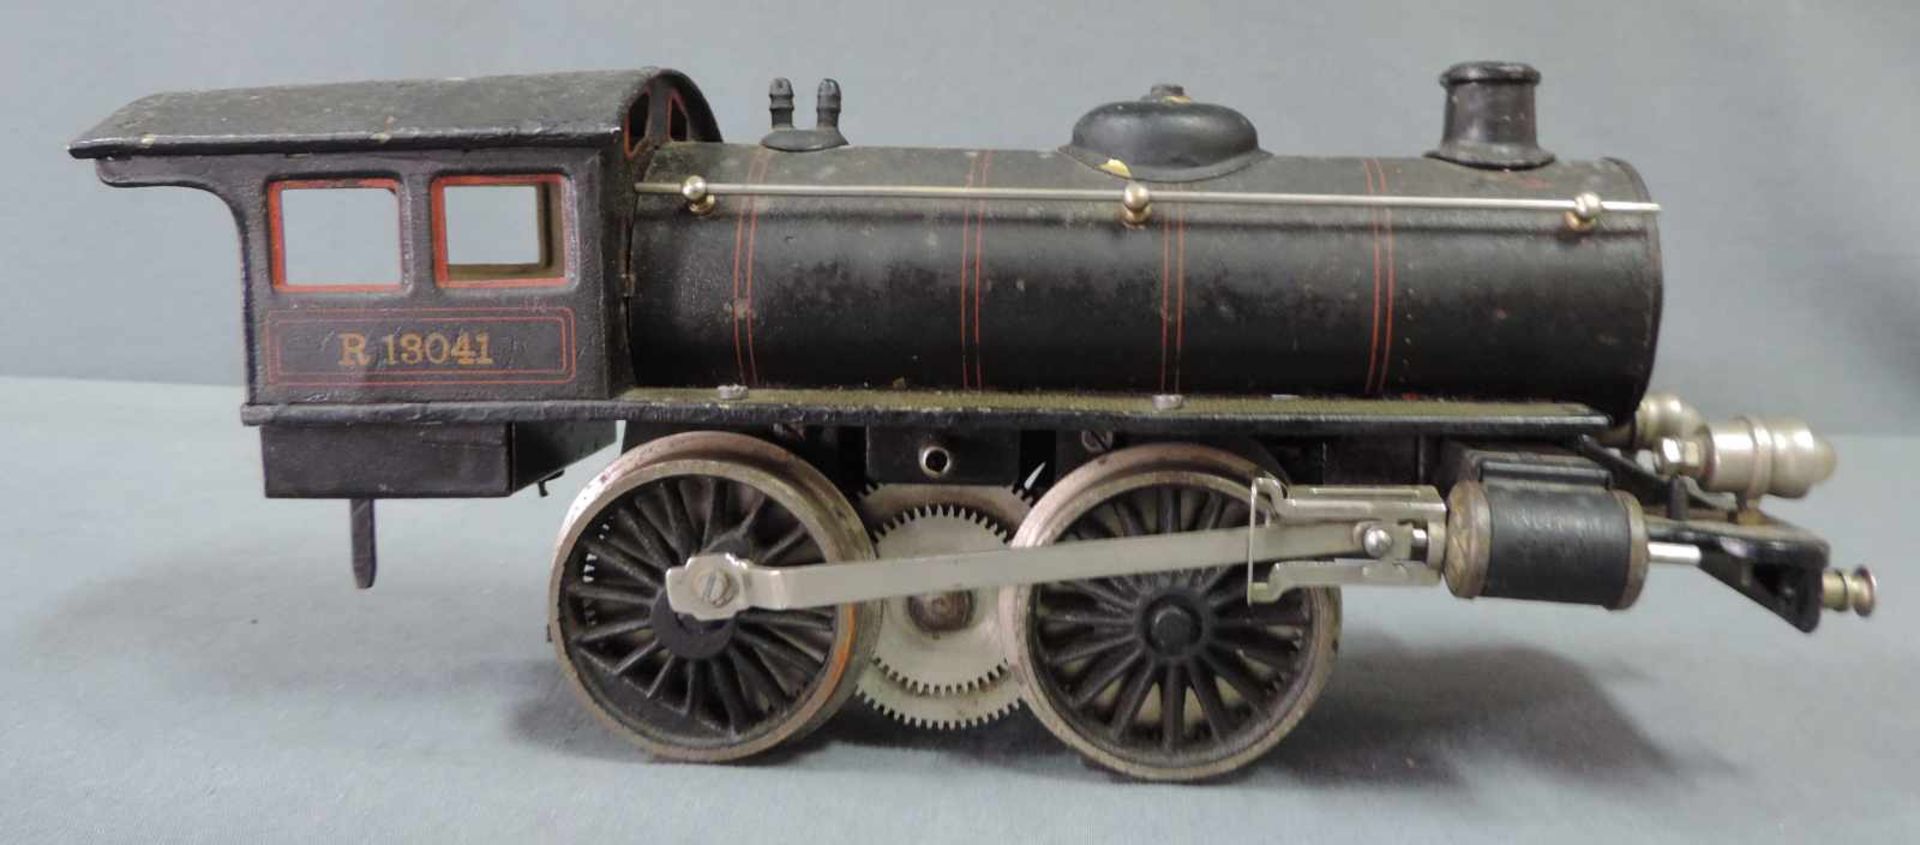 Modell Lokomotive. Märklin. "R 13041" Spur 1 27 cm x 10 cm. Modell Dampflock "R 13041" von Märklin